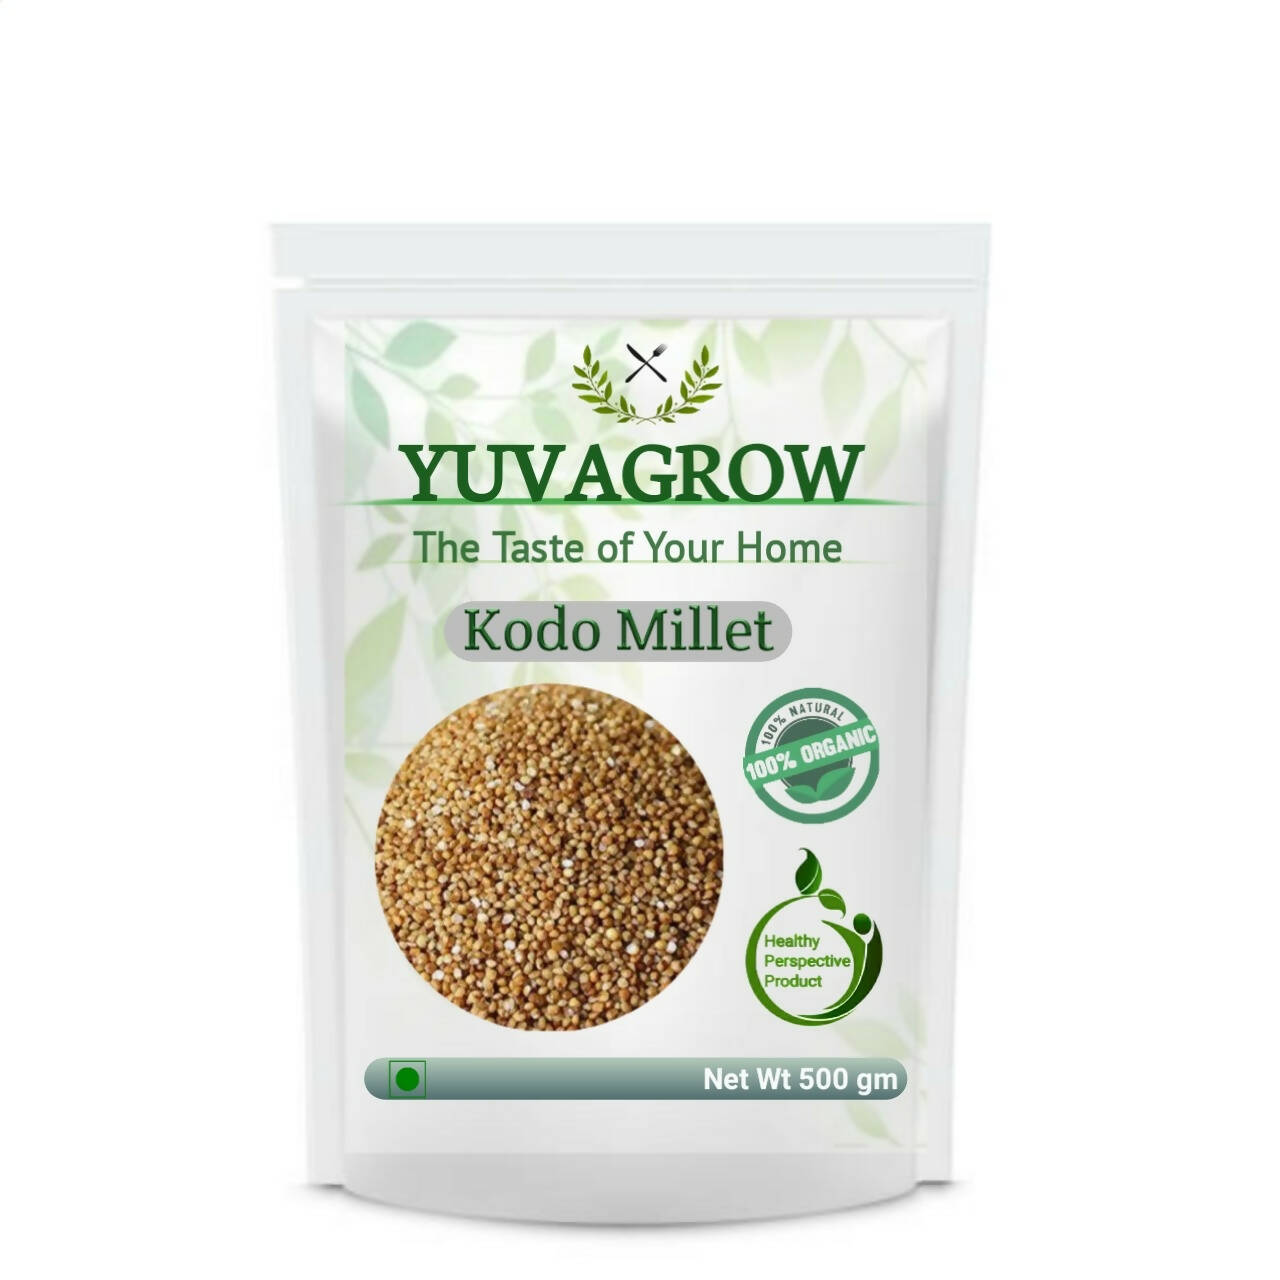 Yuvagrow Kodo Millet - buy in USA, Australia, Canada